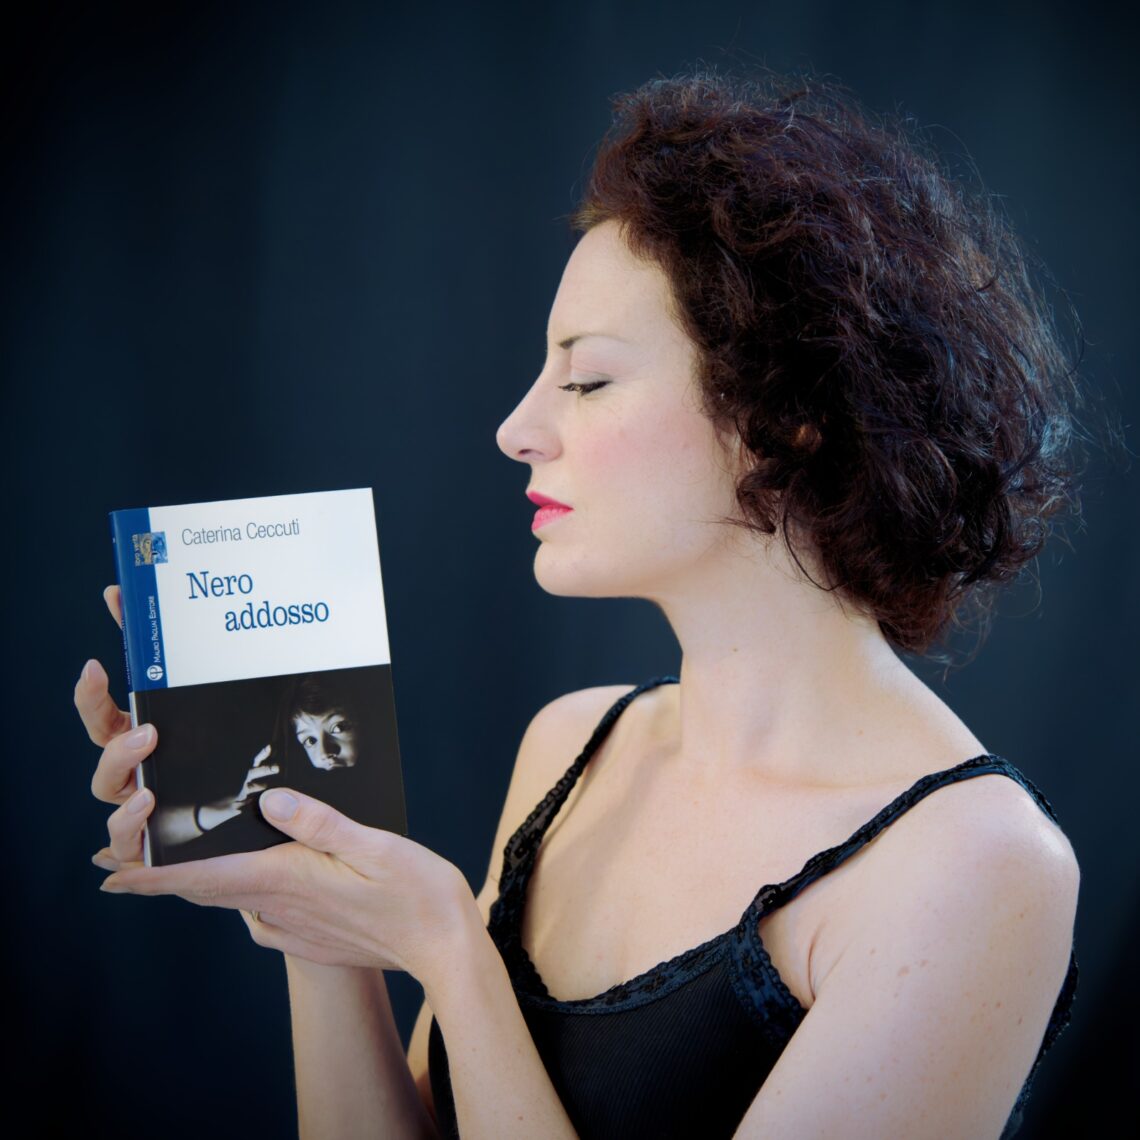 Caterina Cecuti con il suo ultimo romanzo noir "Nero addosso" (Pagliai editore, 2022)